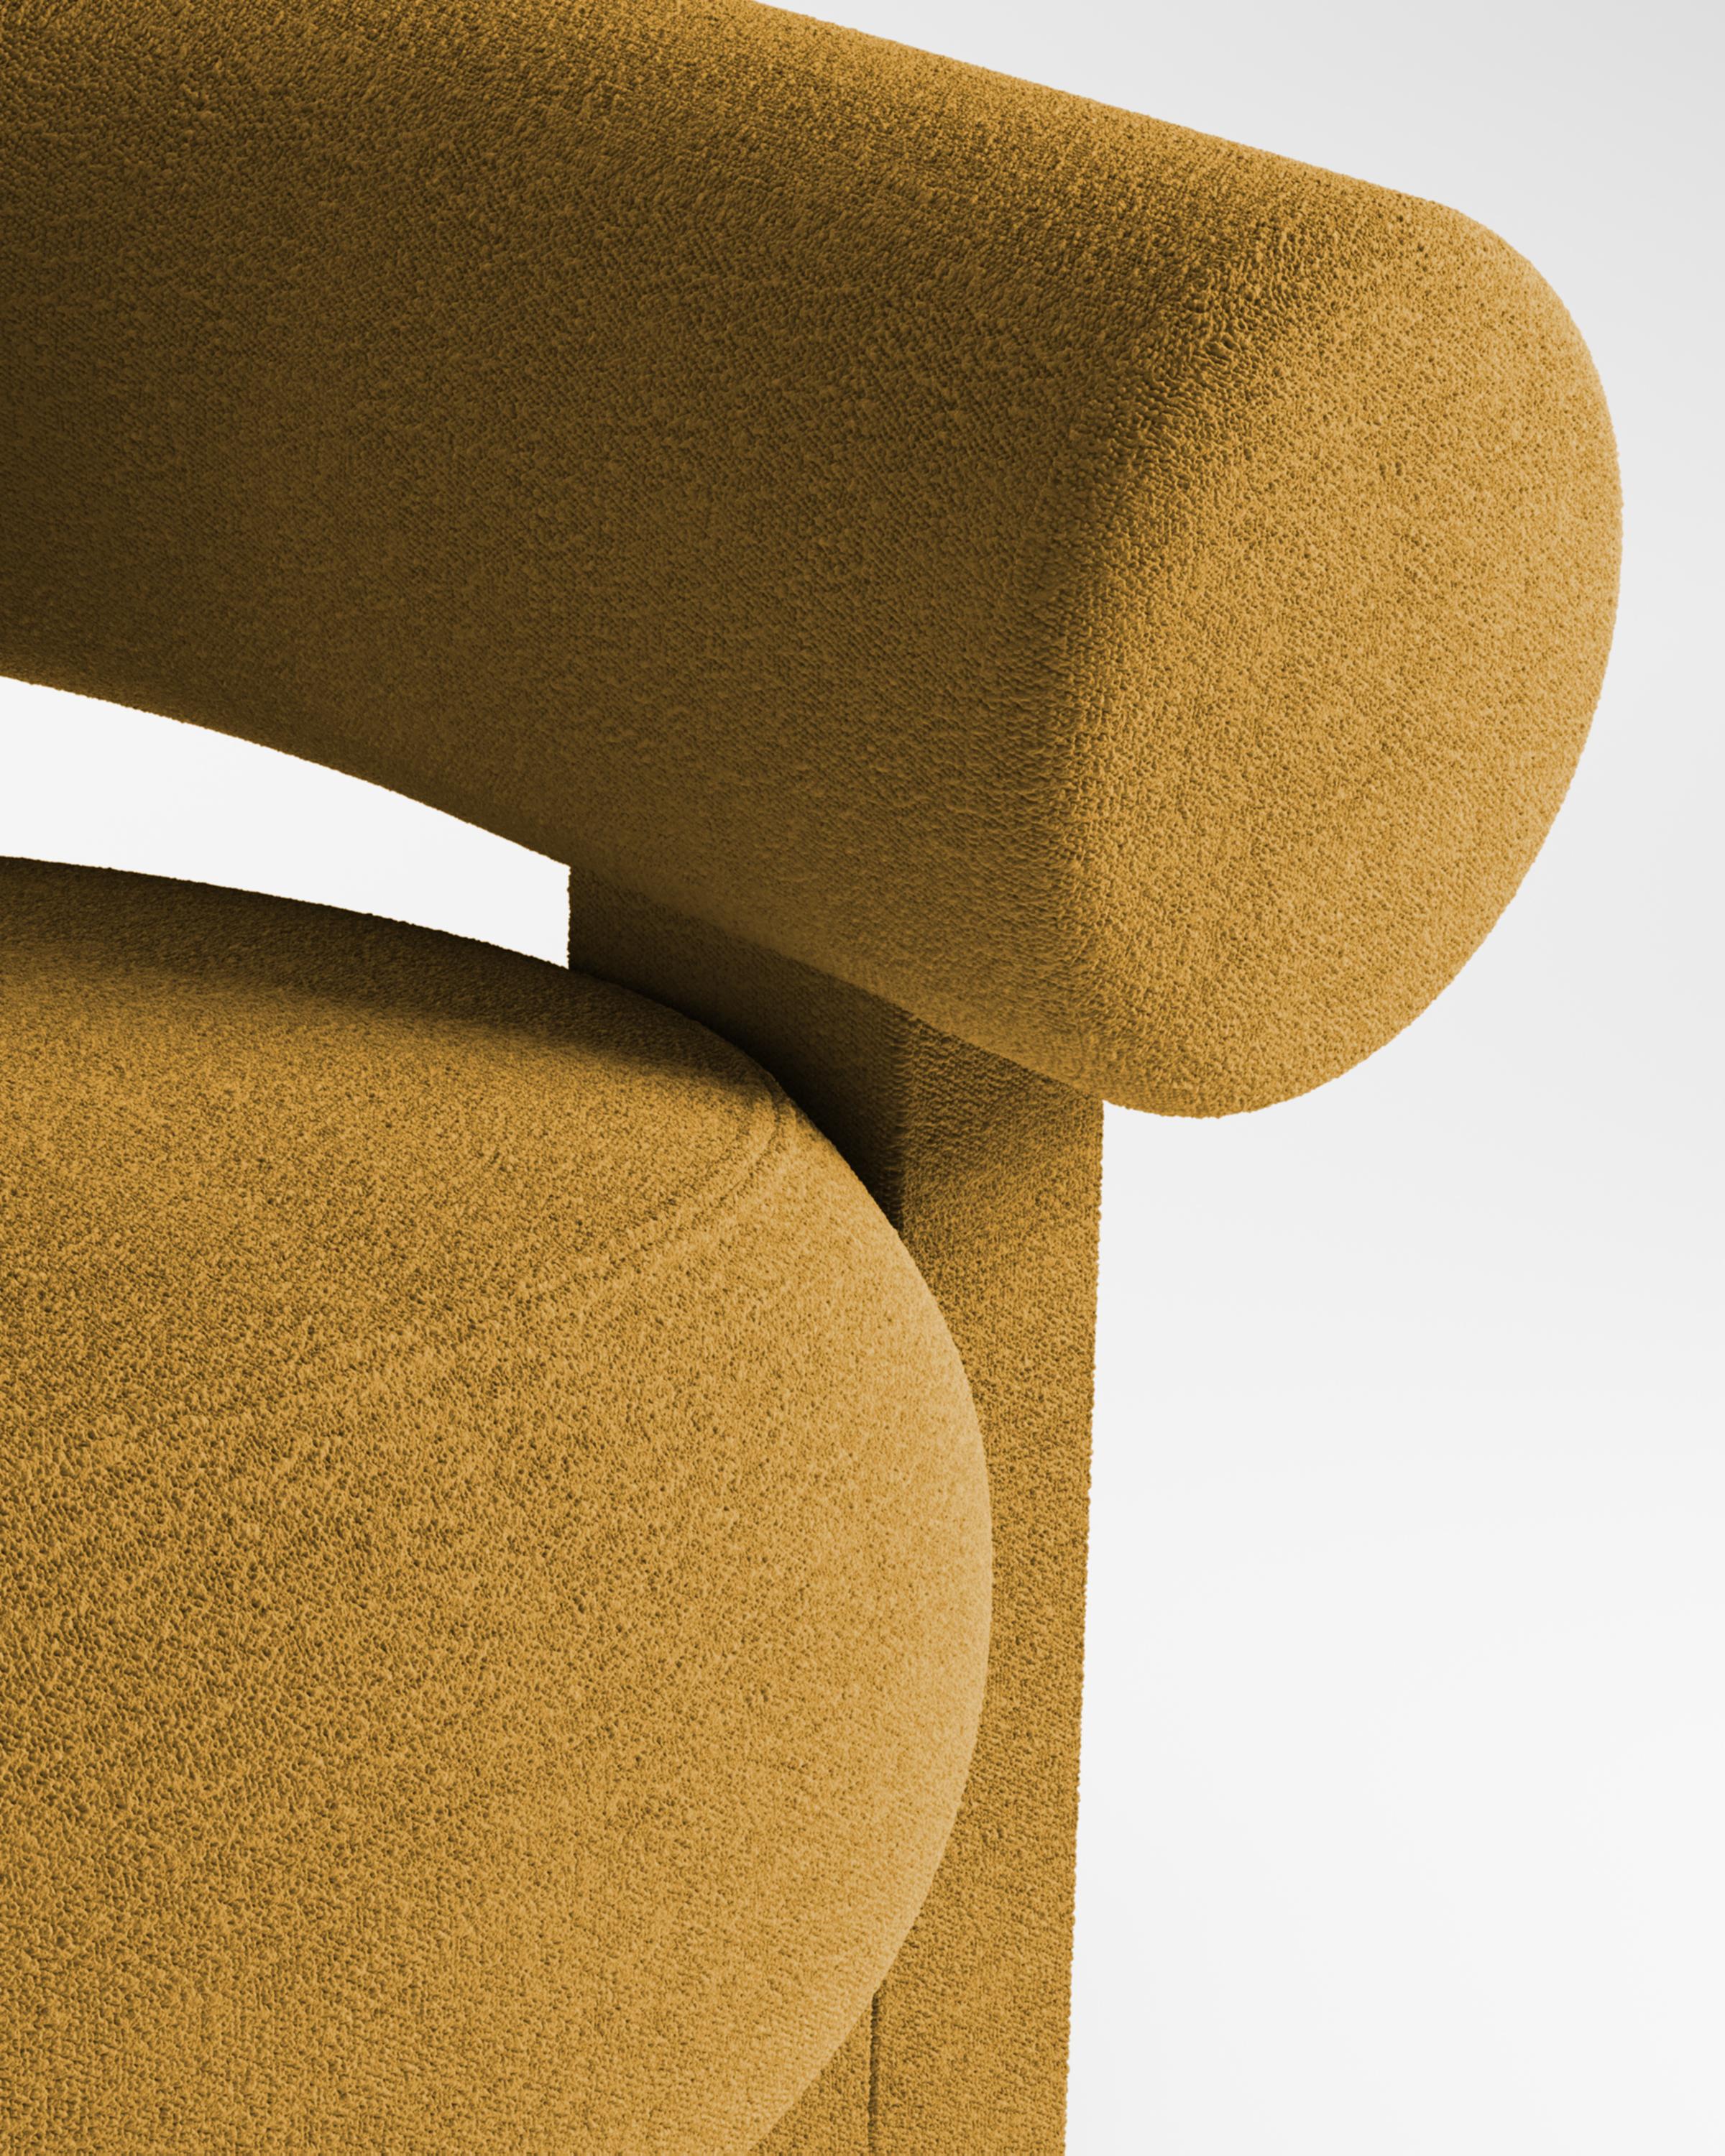 Der Sessel Cassete wurde von Alter Ego für Collector entworfen.

Untermauert von einer minimalistischen und raffinierten Ästhetik mit klaren Linien.

Dimension
B 110 cm 43